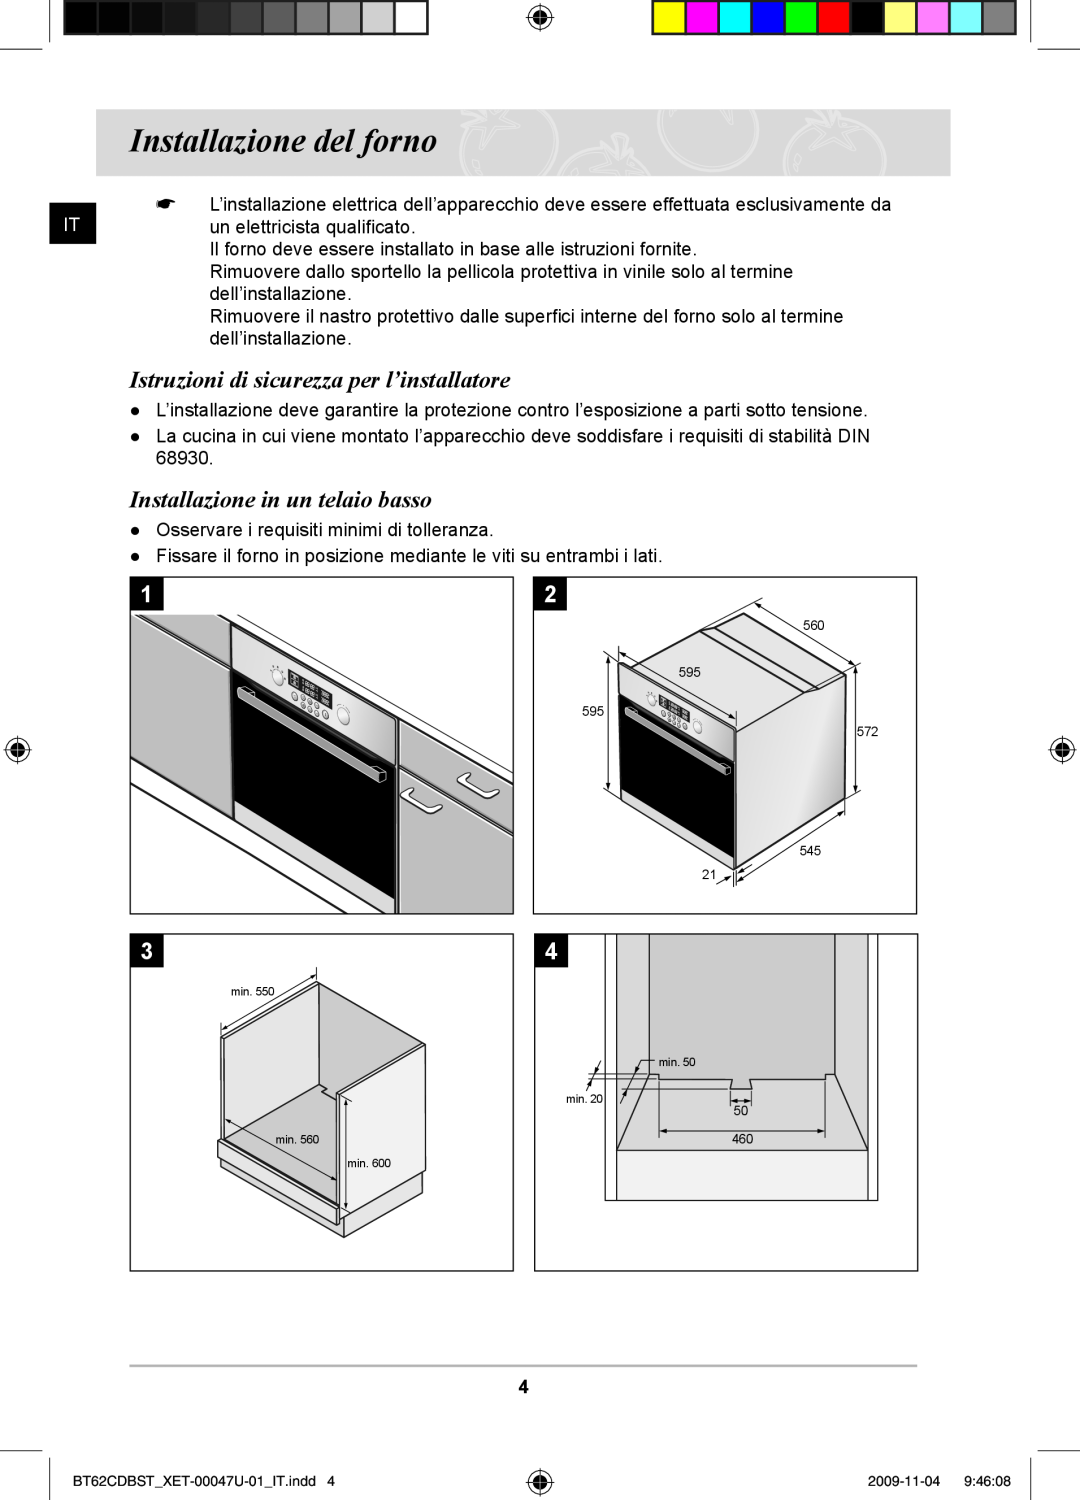 Samsung BT62CDBST/XET manual Installazione del forno, Istruzioni di sicurezza per l’installatore 